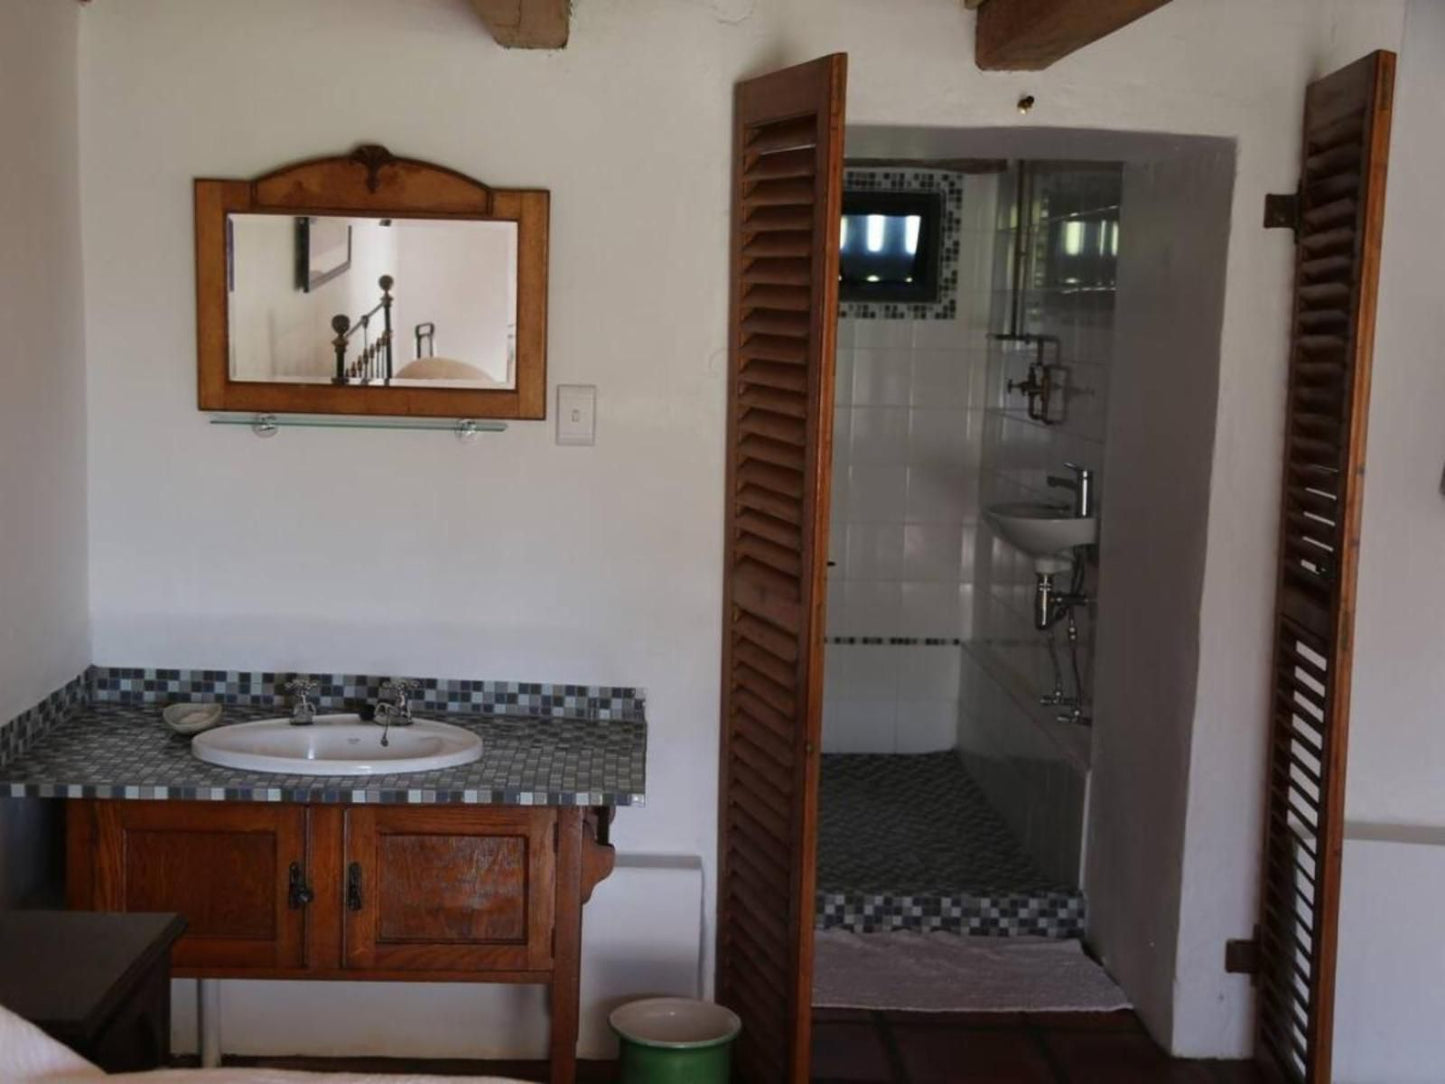 Zeekoegat Historical Homestead Riversdale Western Cape South Africa Bathroom